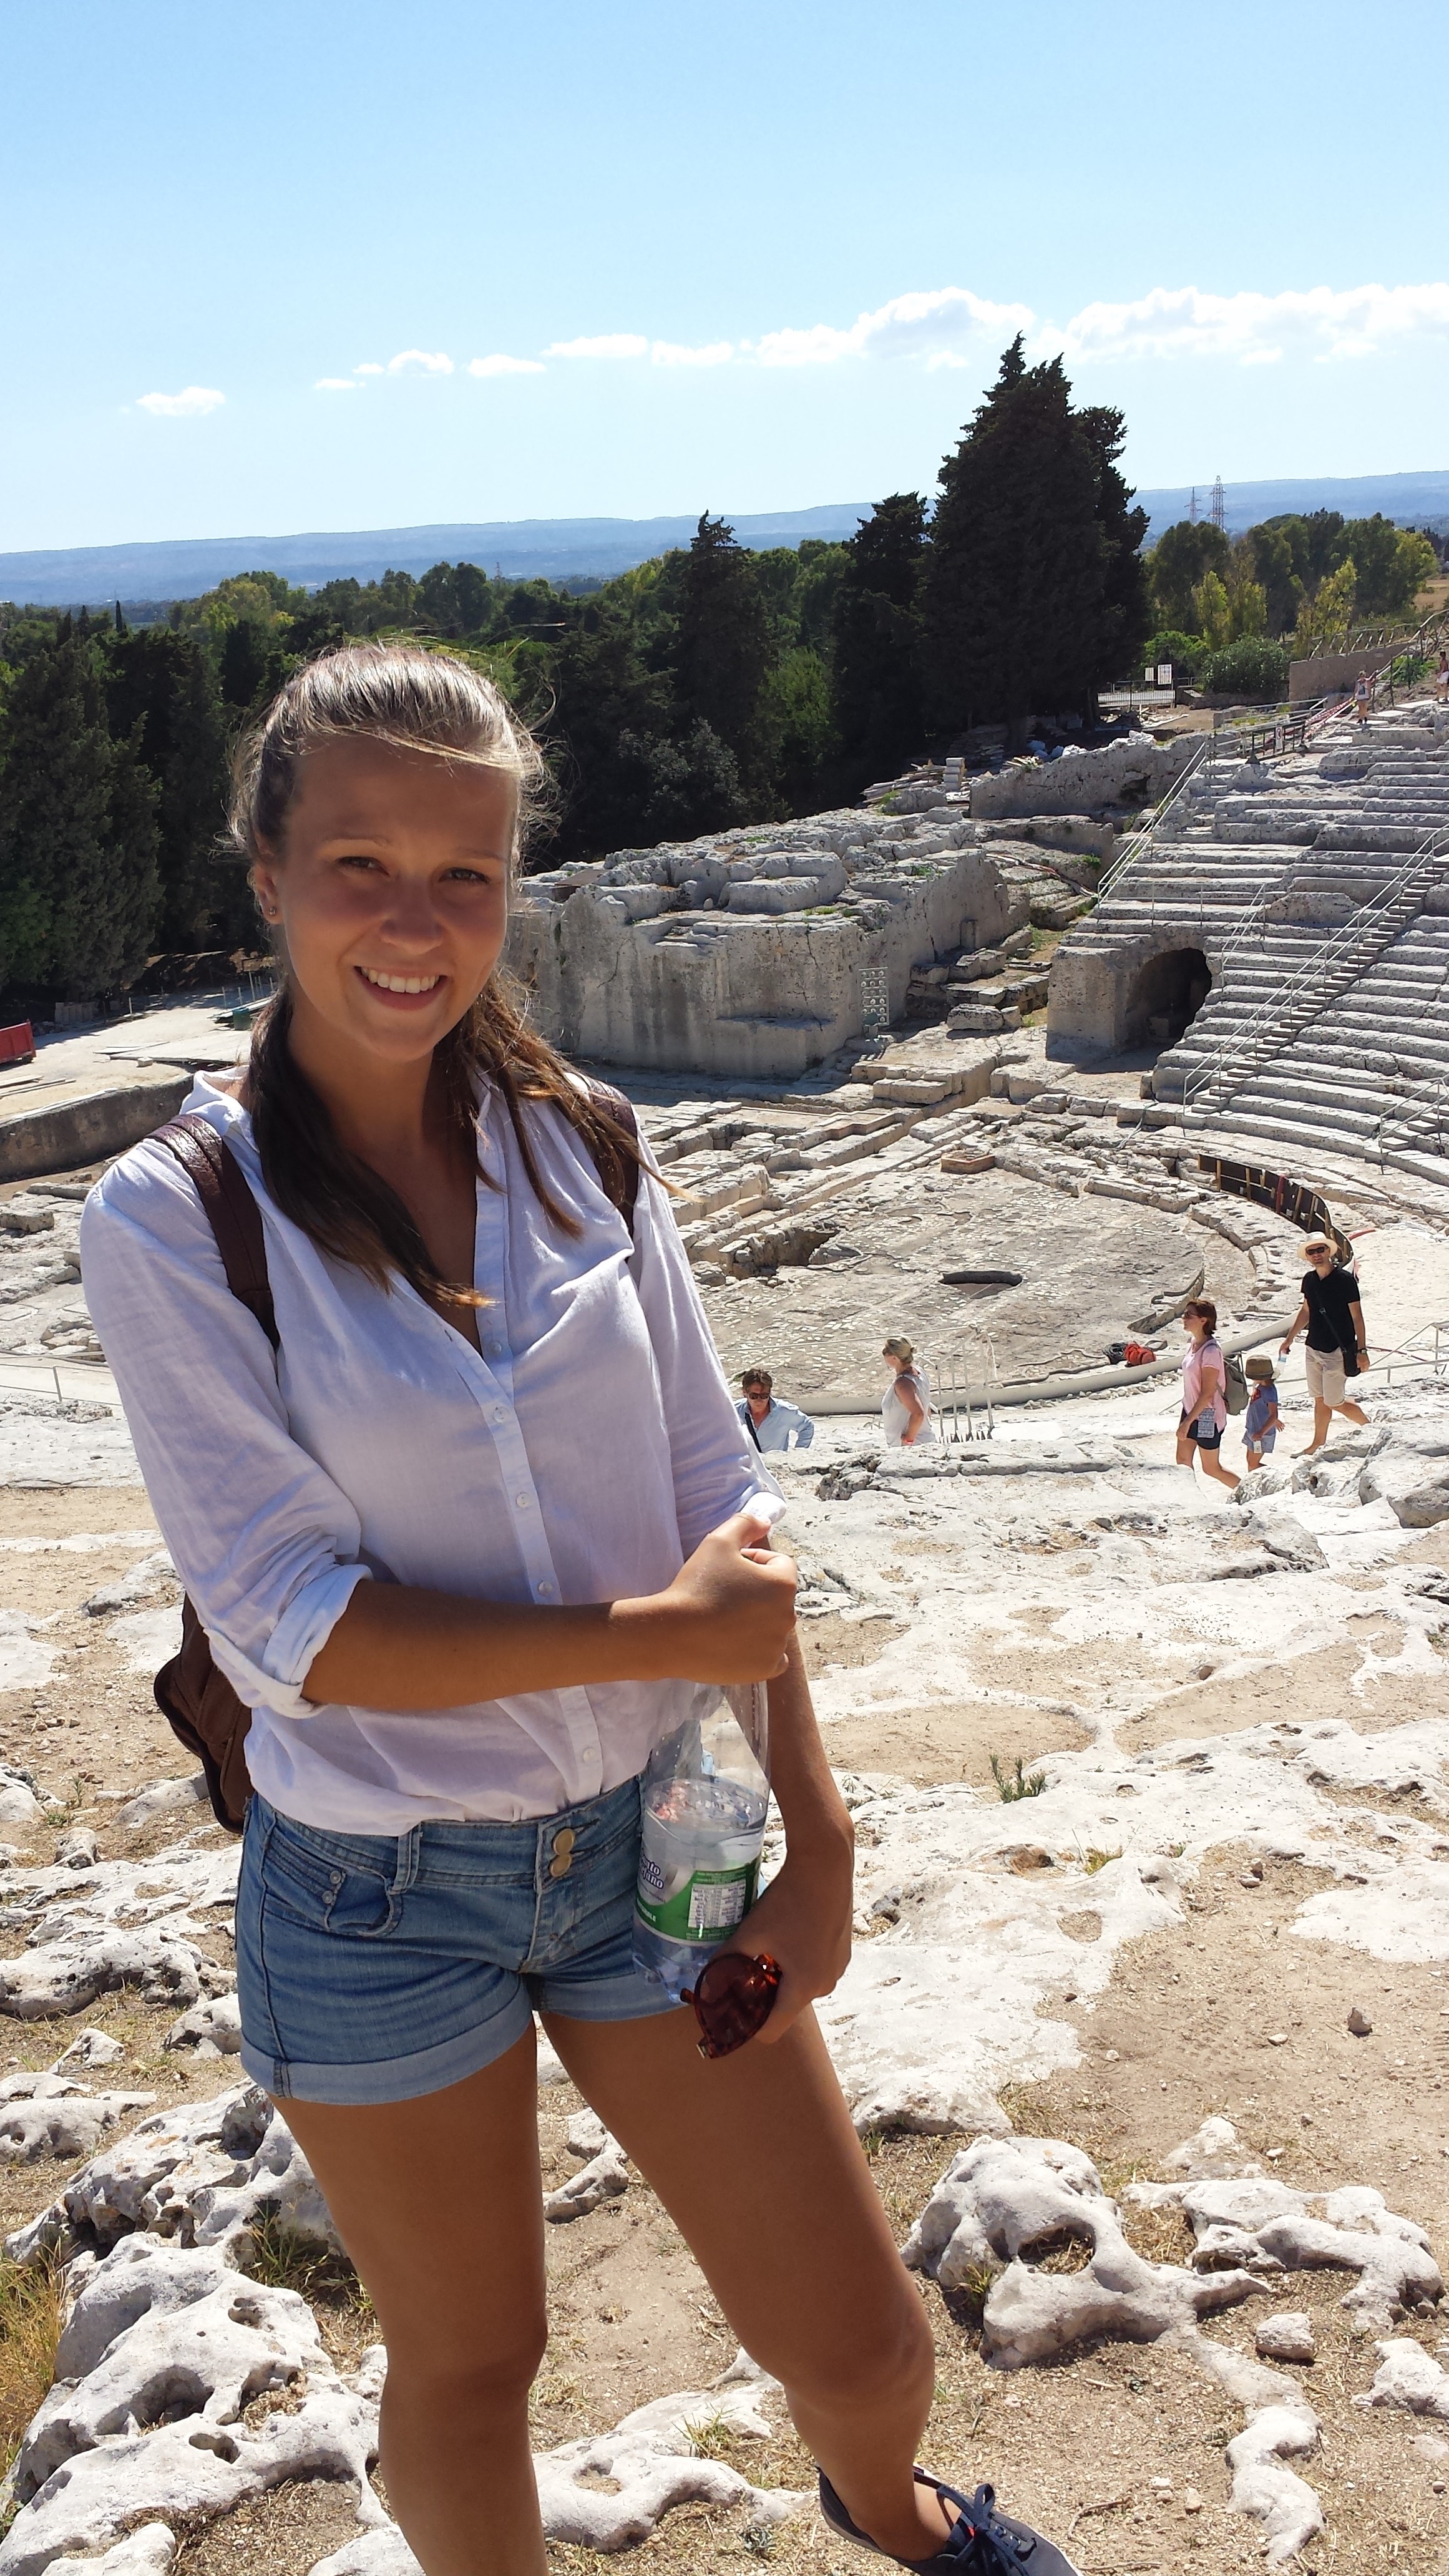 "V Sirasuse sme navštívili archeologický park (na obrázku grécke divadlo)."